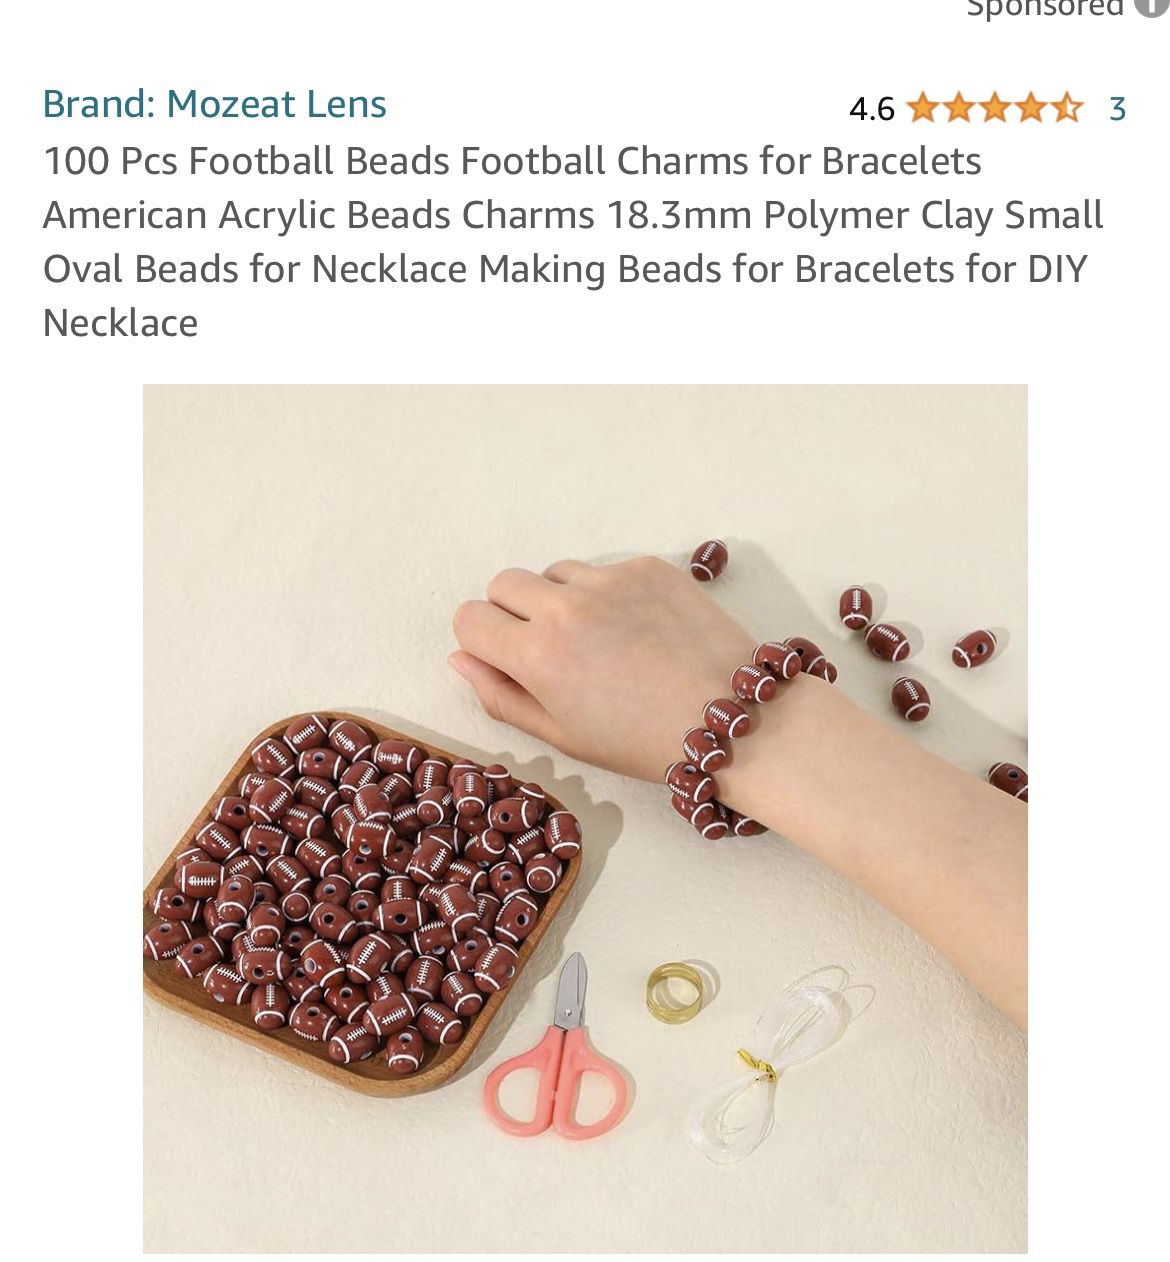 Football Bracelet Making Kit